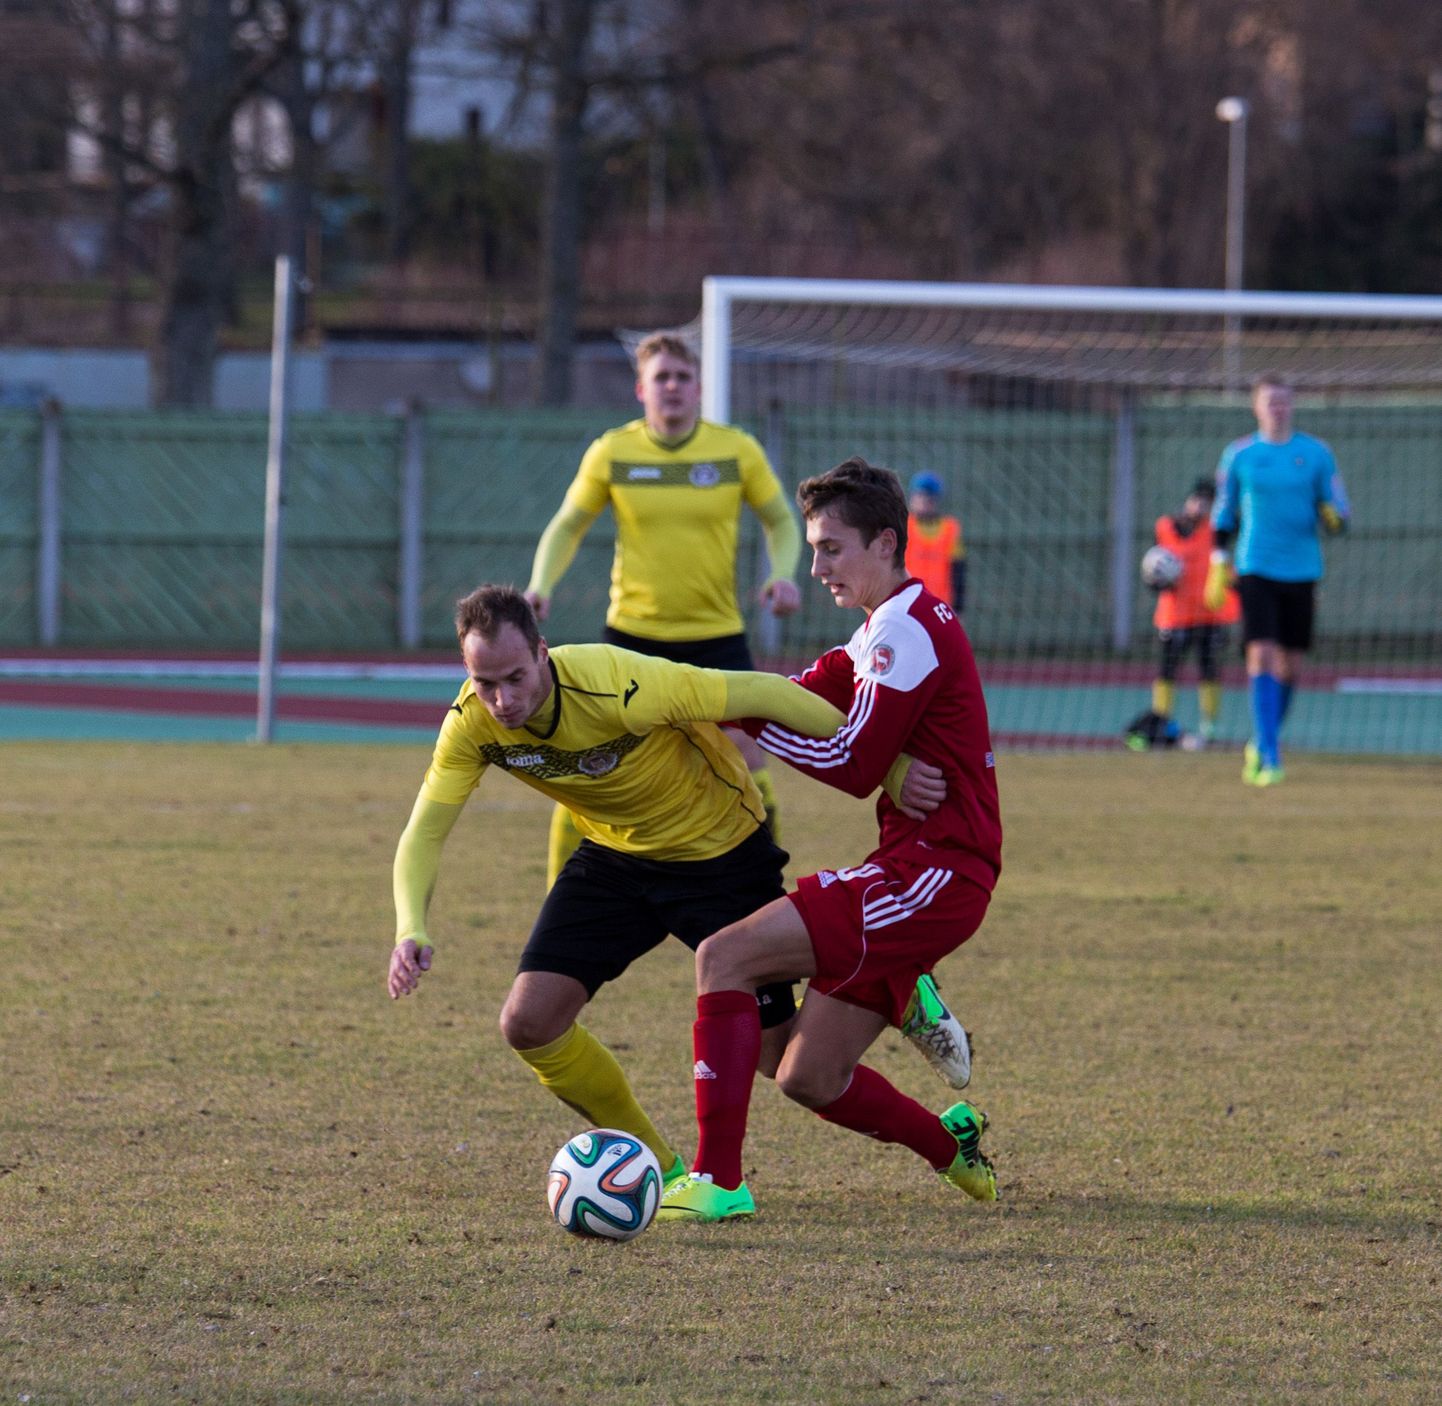 Laupäeval peeti Ahtme gümnaasiumi kunstmuruväljakul Premium-liiga otsustav üleminekumäng Jõhvi FC Lokomotivi ja Viljandi JK Tuleviku vahel, mis lõppes 1:1 viigiga.